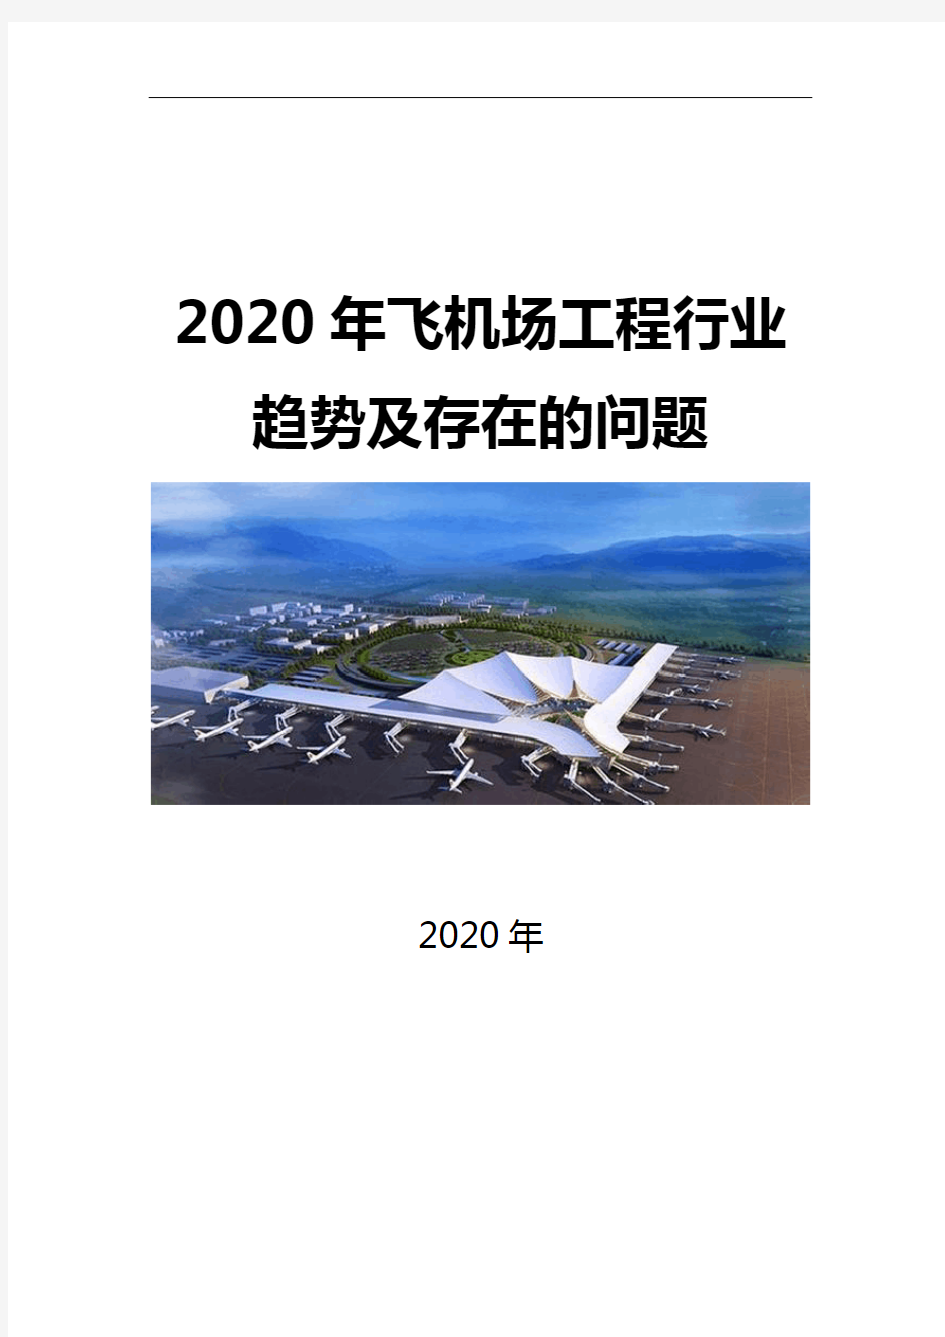 2020飞机场工程行业趋势及存在的问题